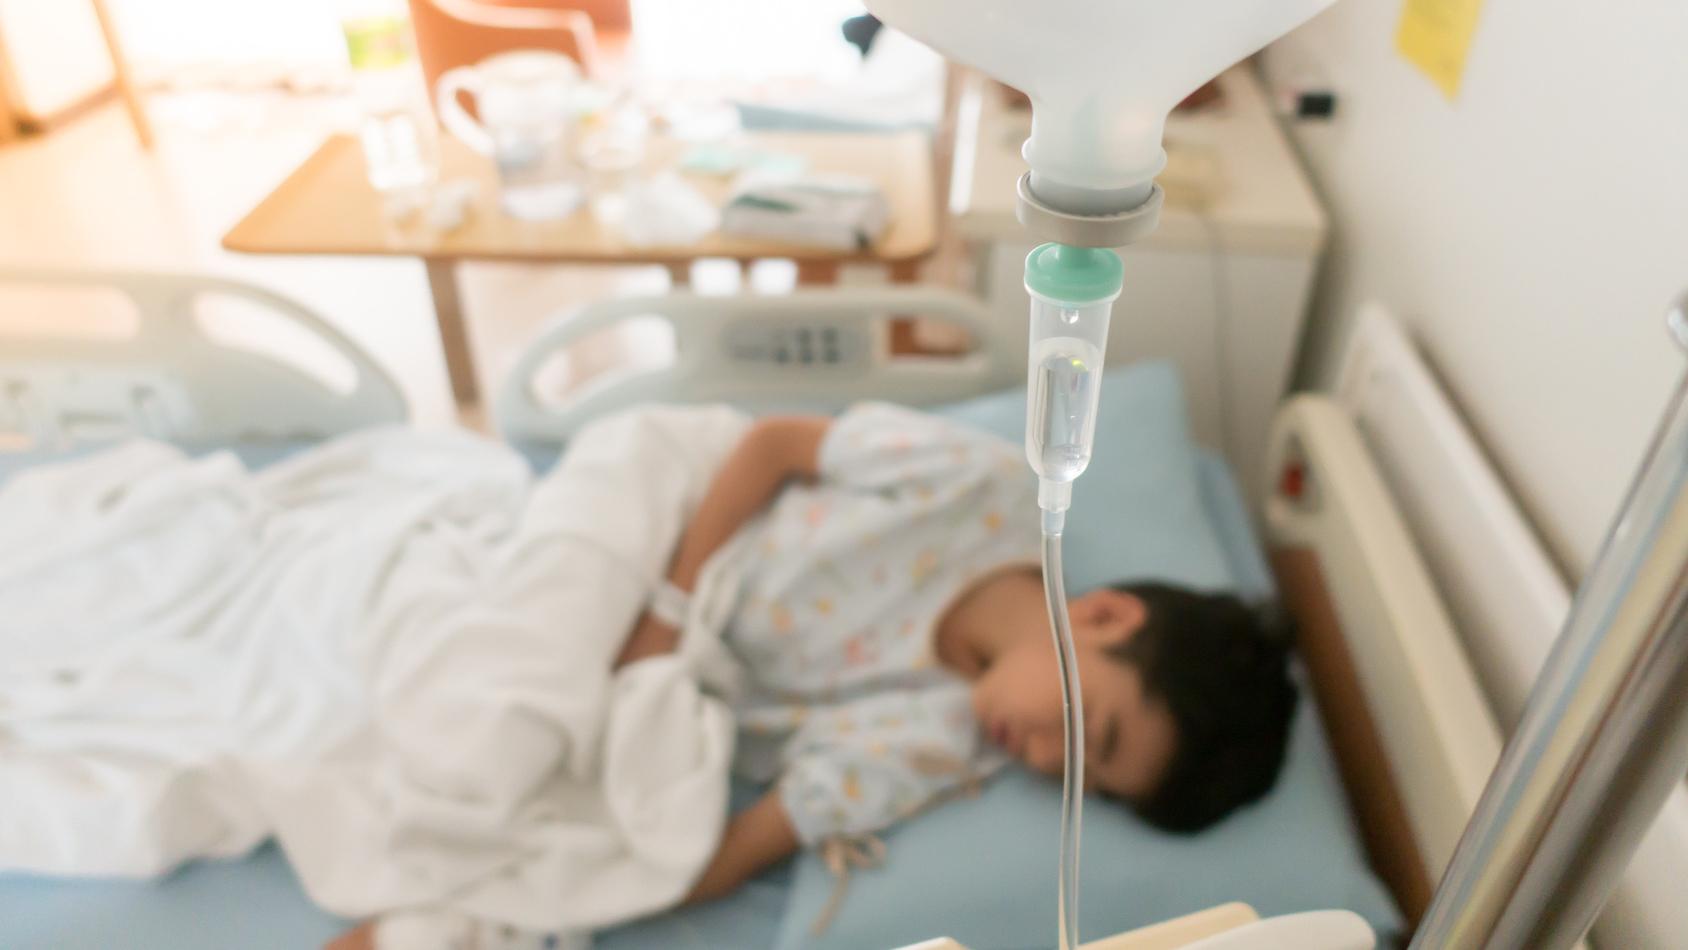 COVID-19 при онкозаболеваниях у детей: высокий риск смерти и прерванное лечение